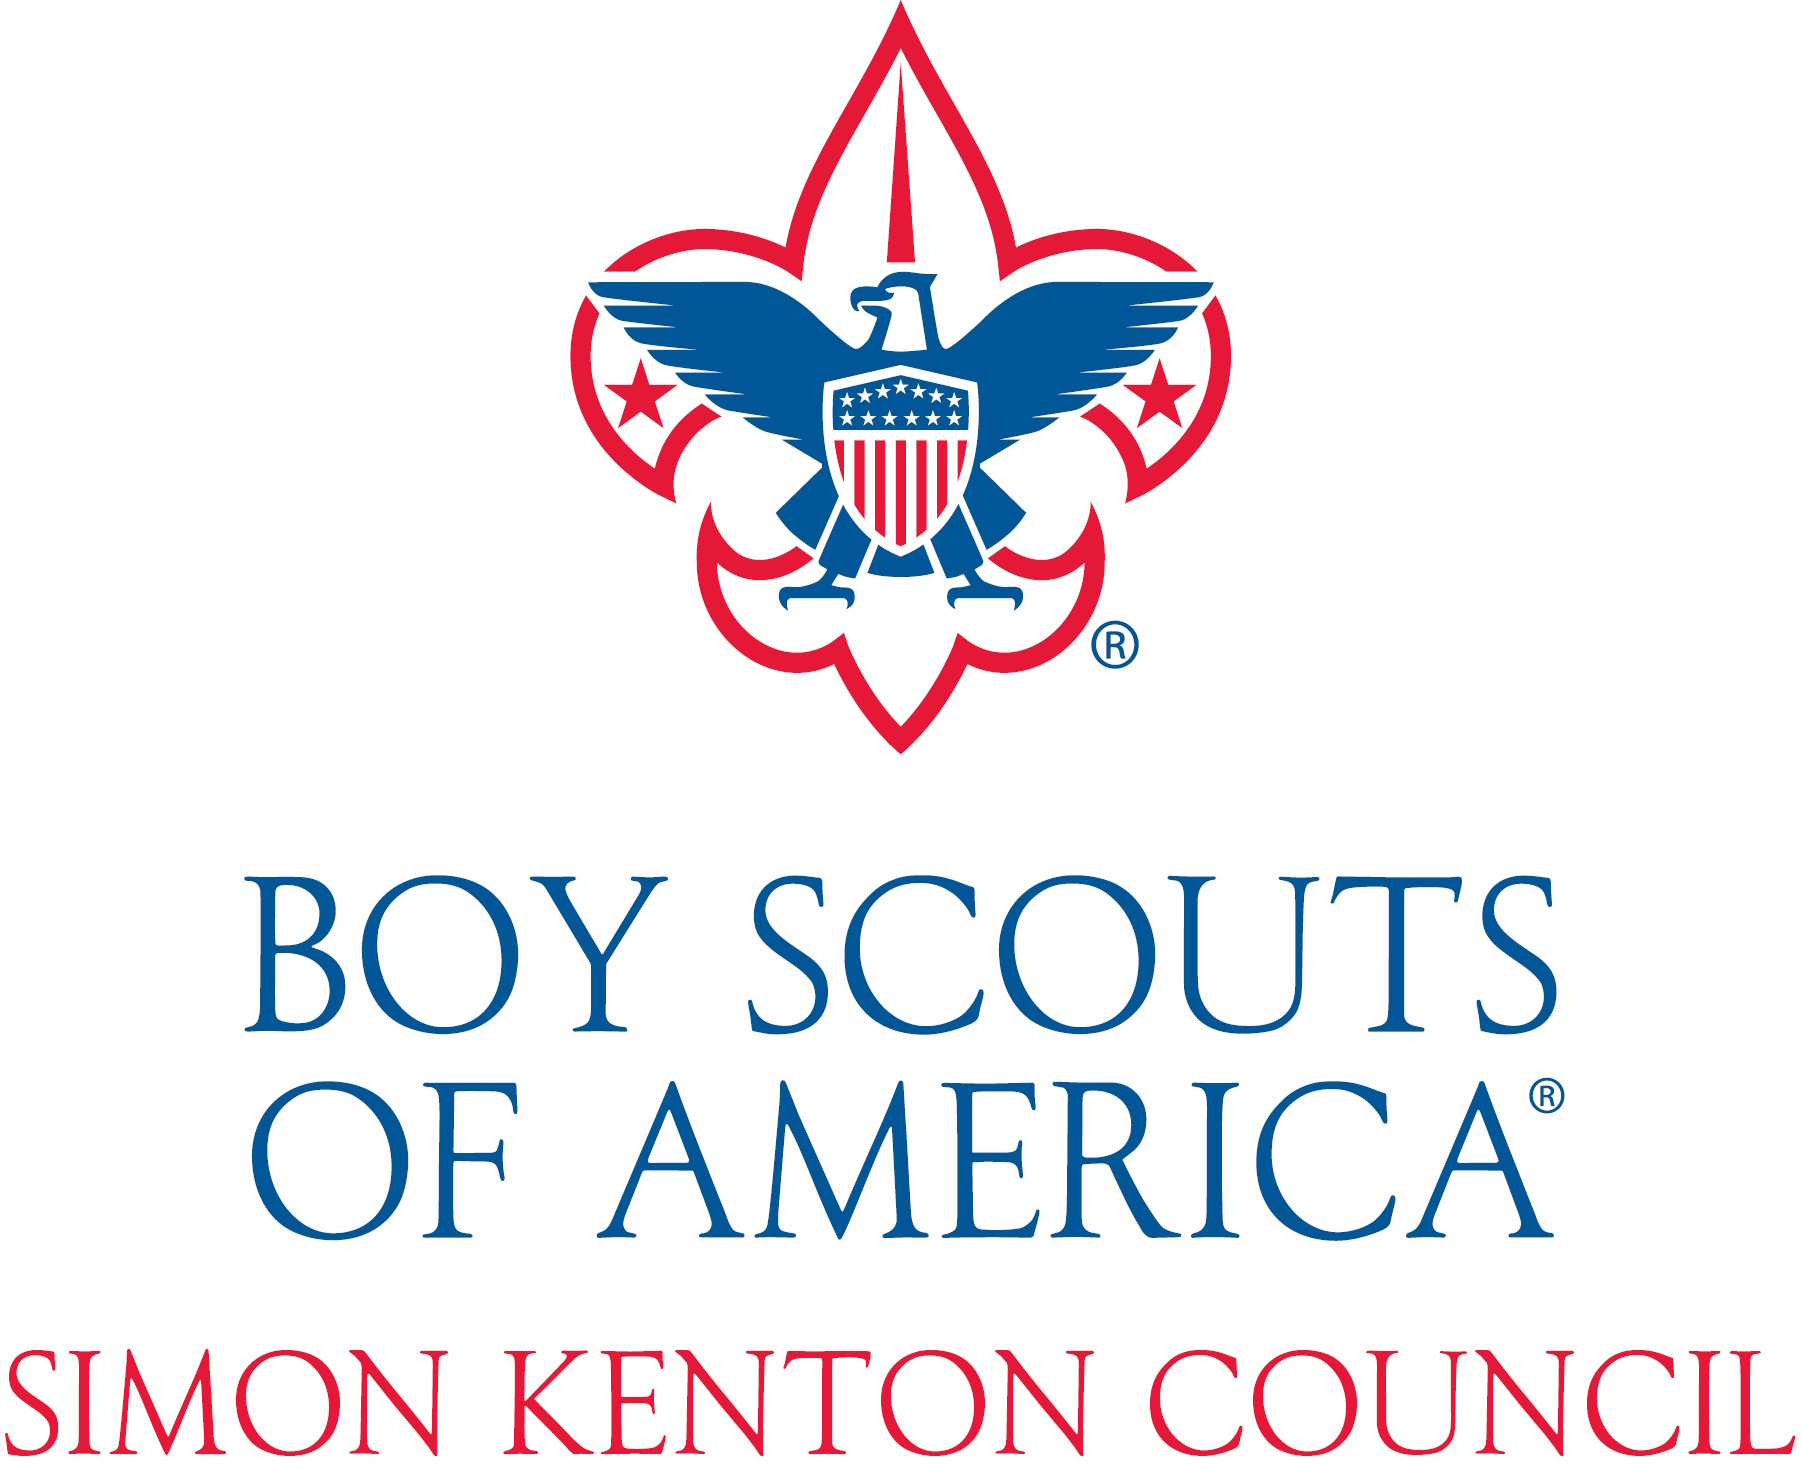 Simon Kenton Council Boy Scouts of America logo